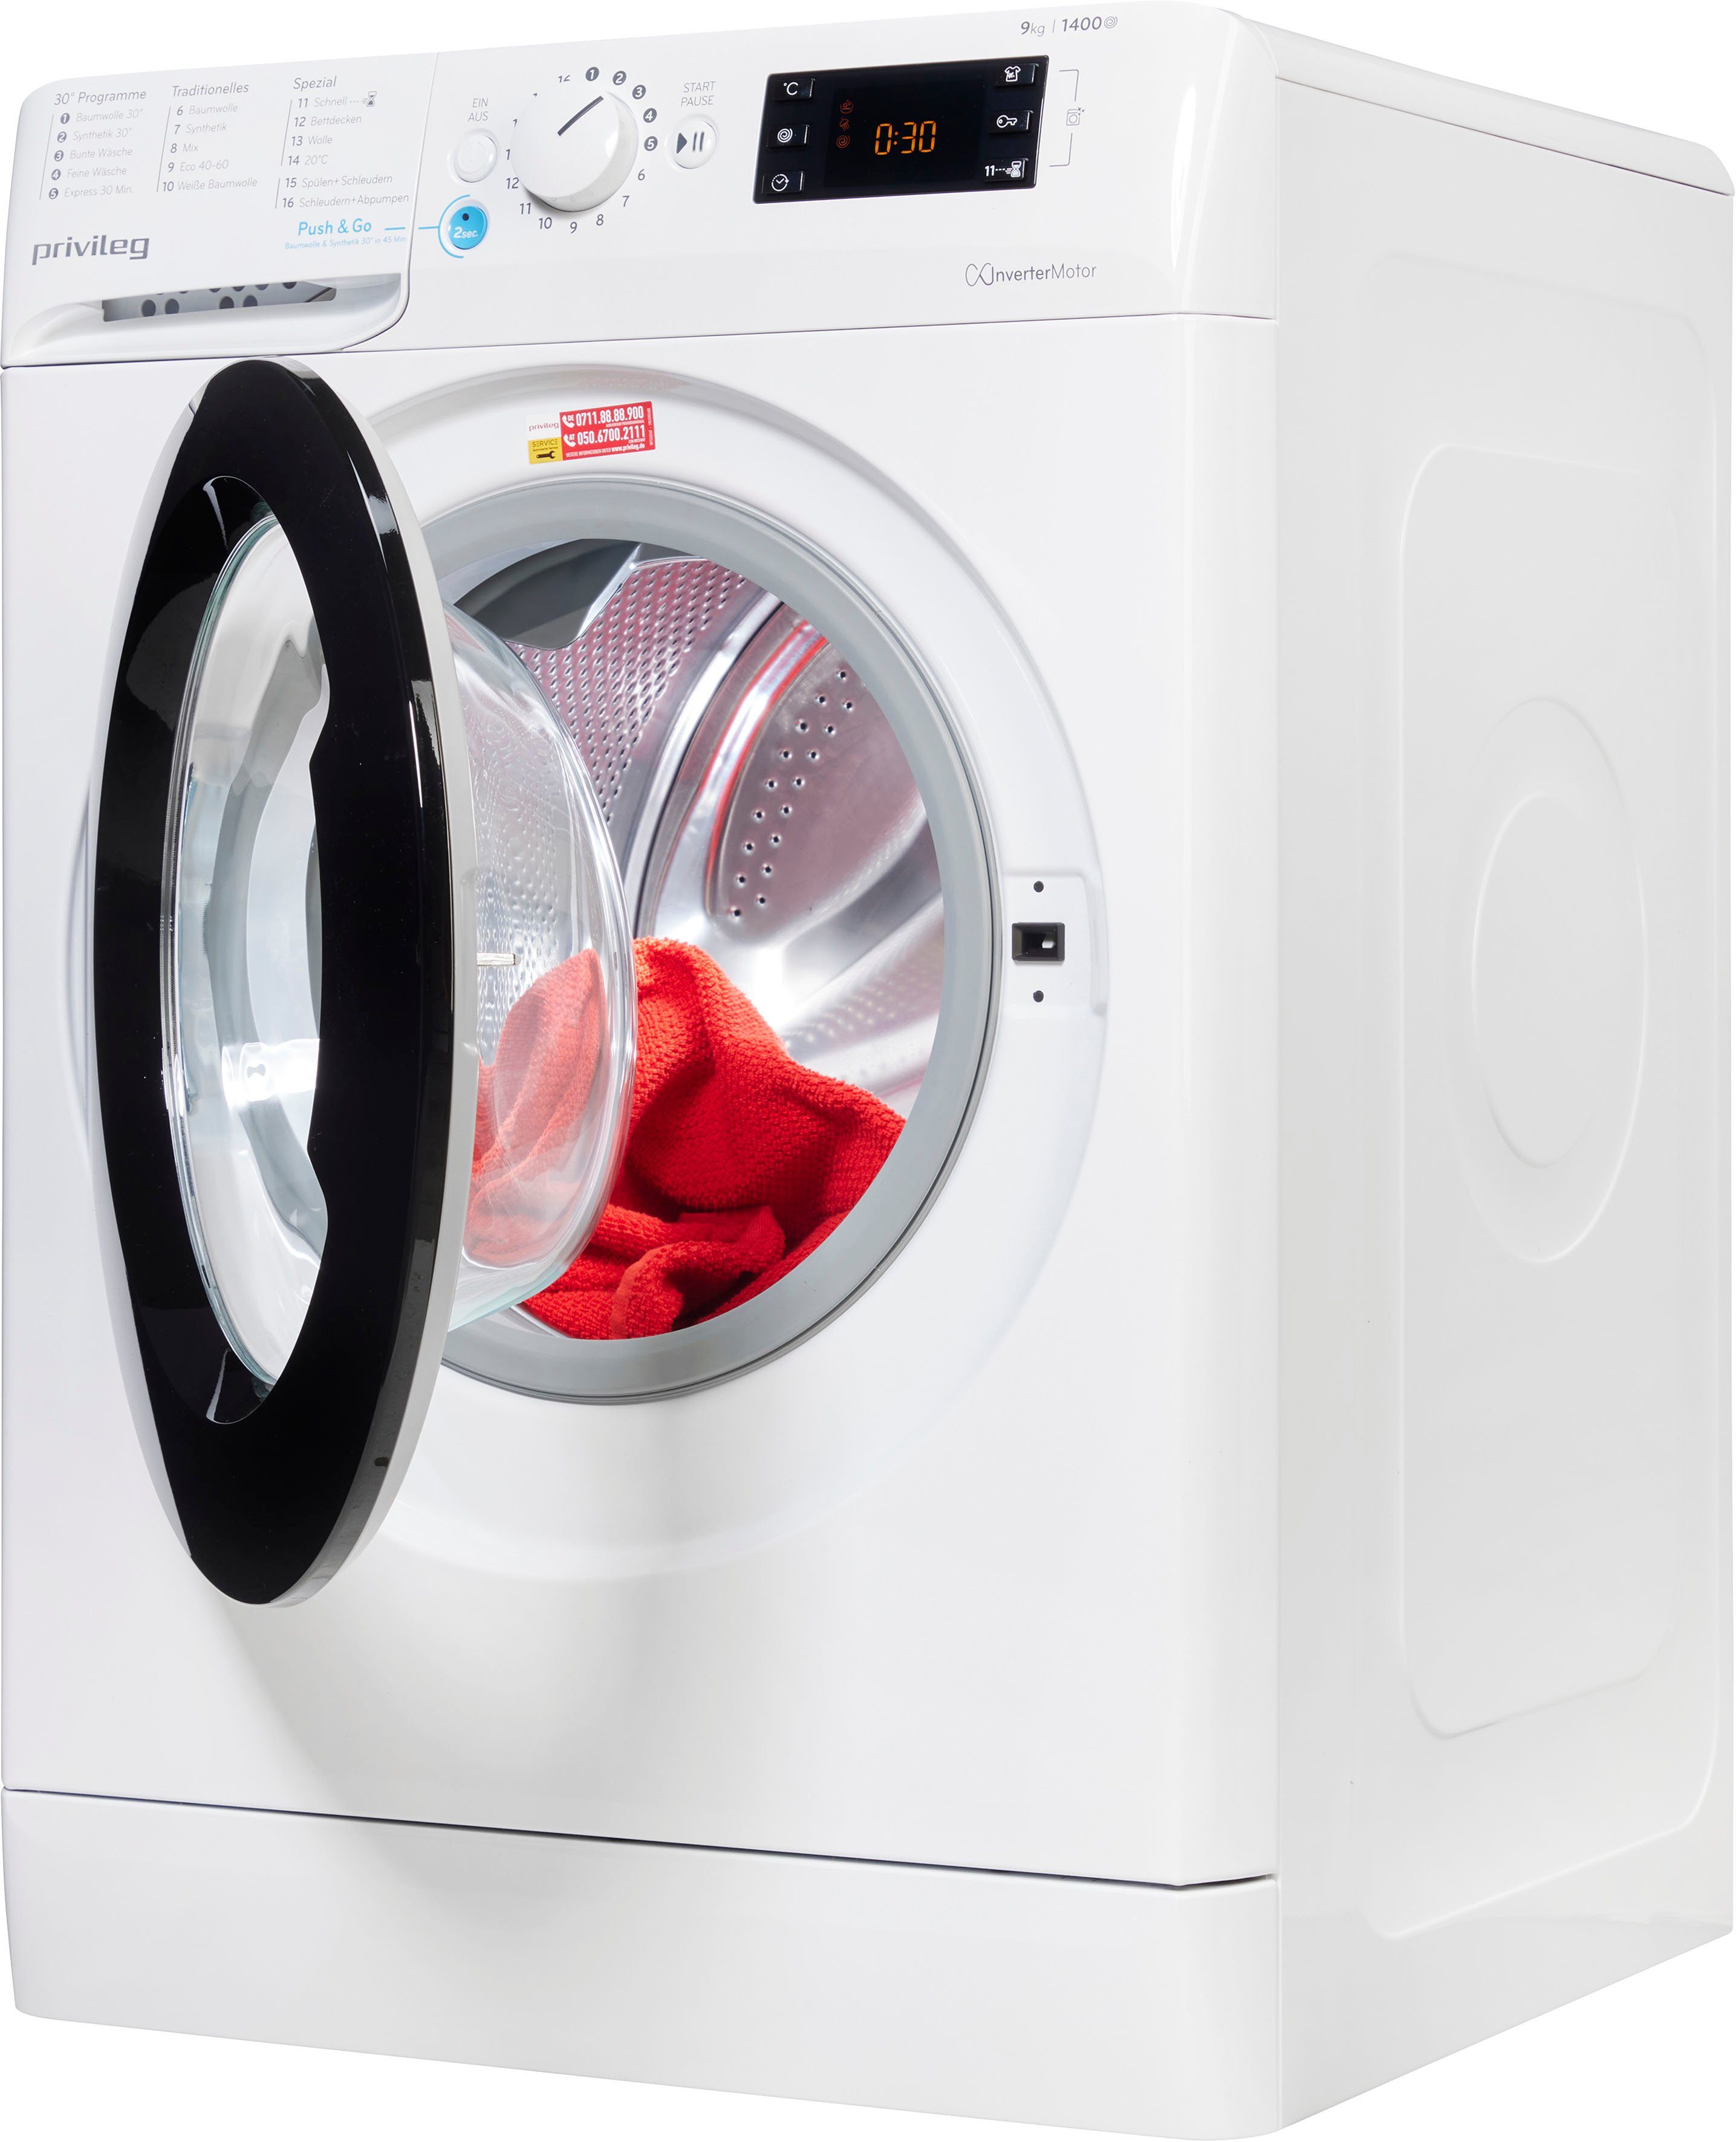 Privileg Waschmaschine 953 1400 PWF X A, kg, 9 U/min